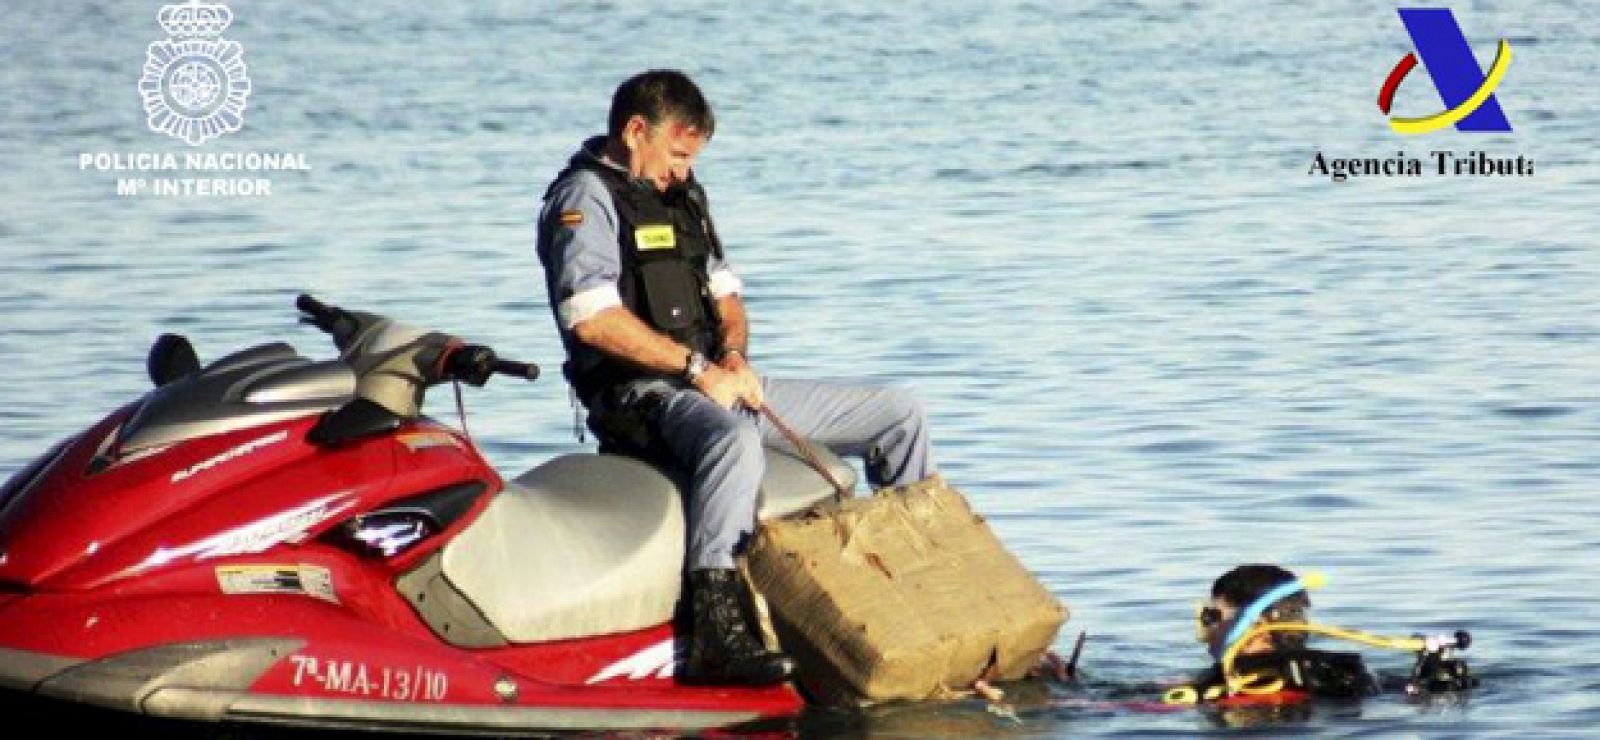 La Policíaha recuperado 700 kilos de hachís del fondo del mar en las proximidades de la playa del Saladillo, en Estepona (Málaga).